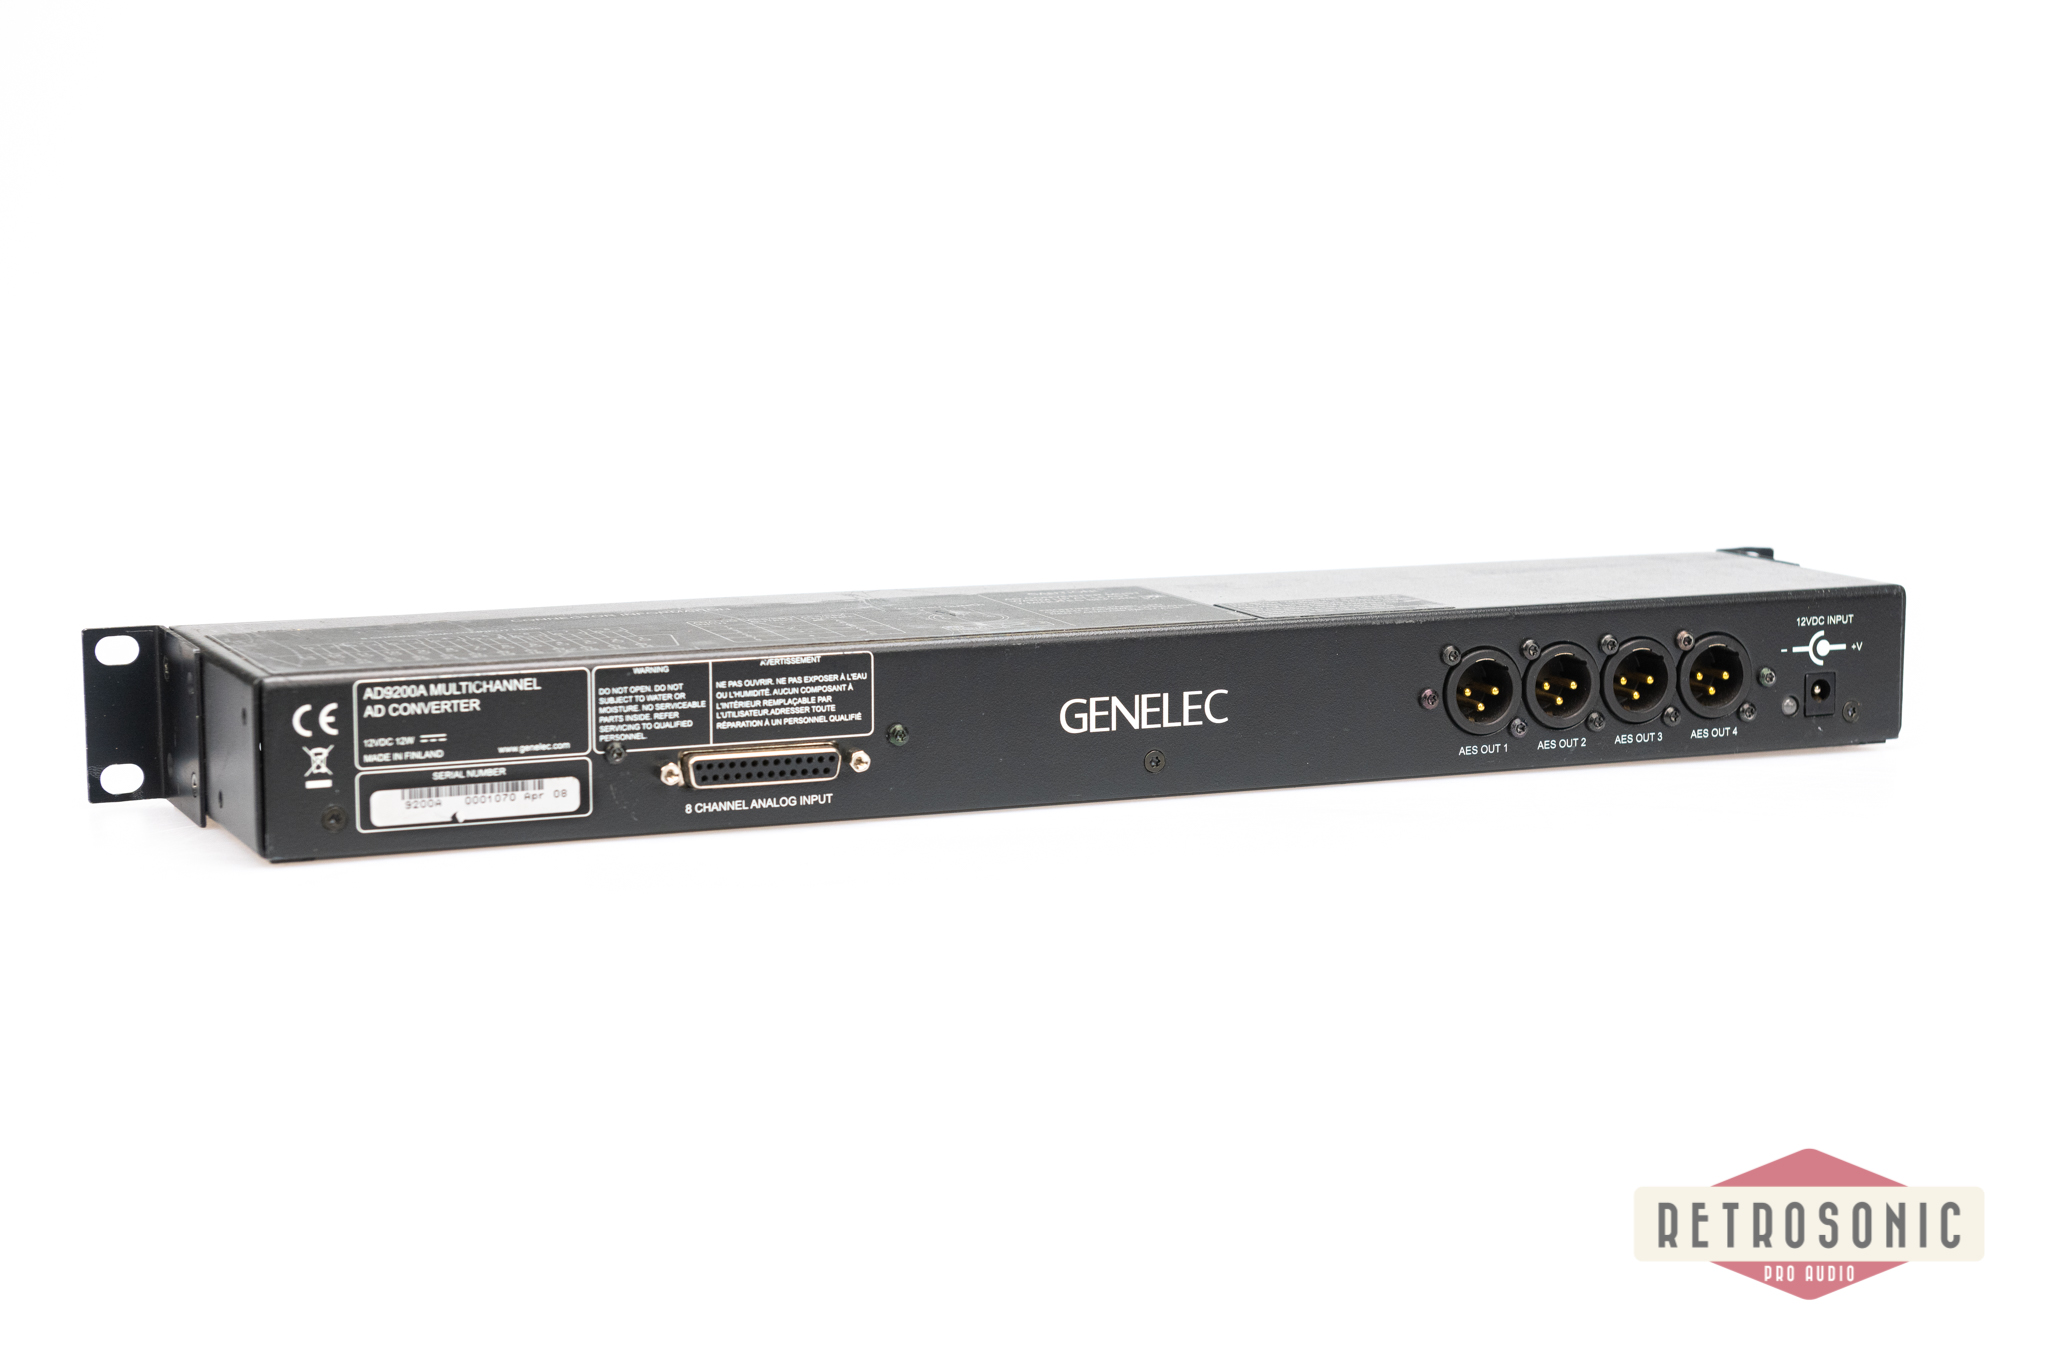 Genelec AD9200A 8-channel AD-Converter DB25 Analog - AES/EBU Digital (s.0170)